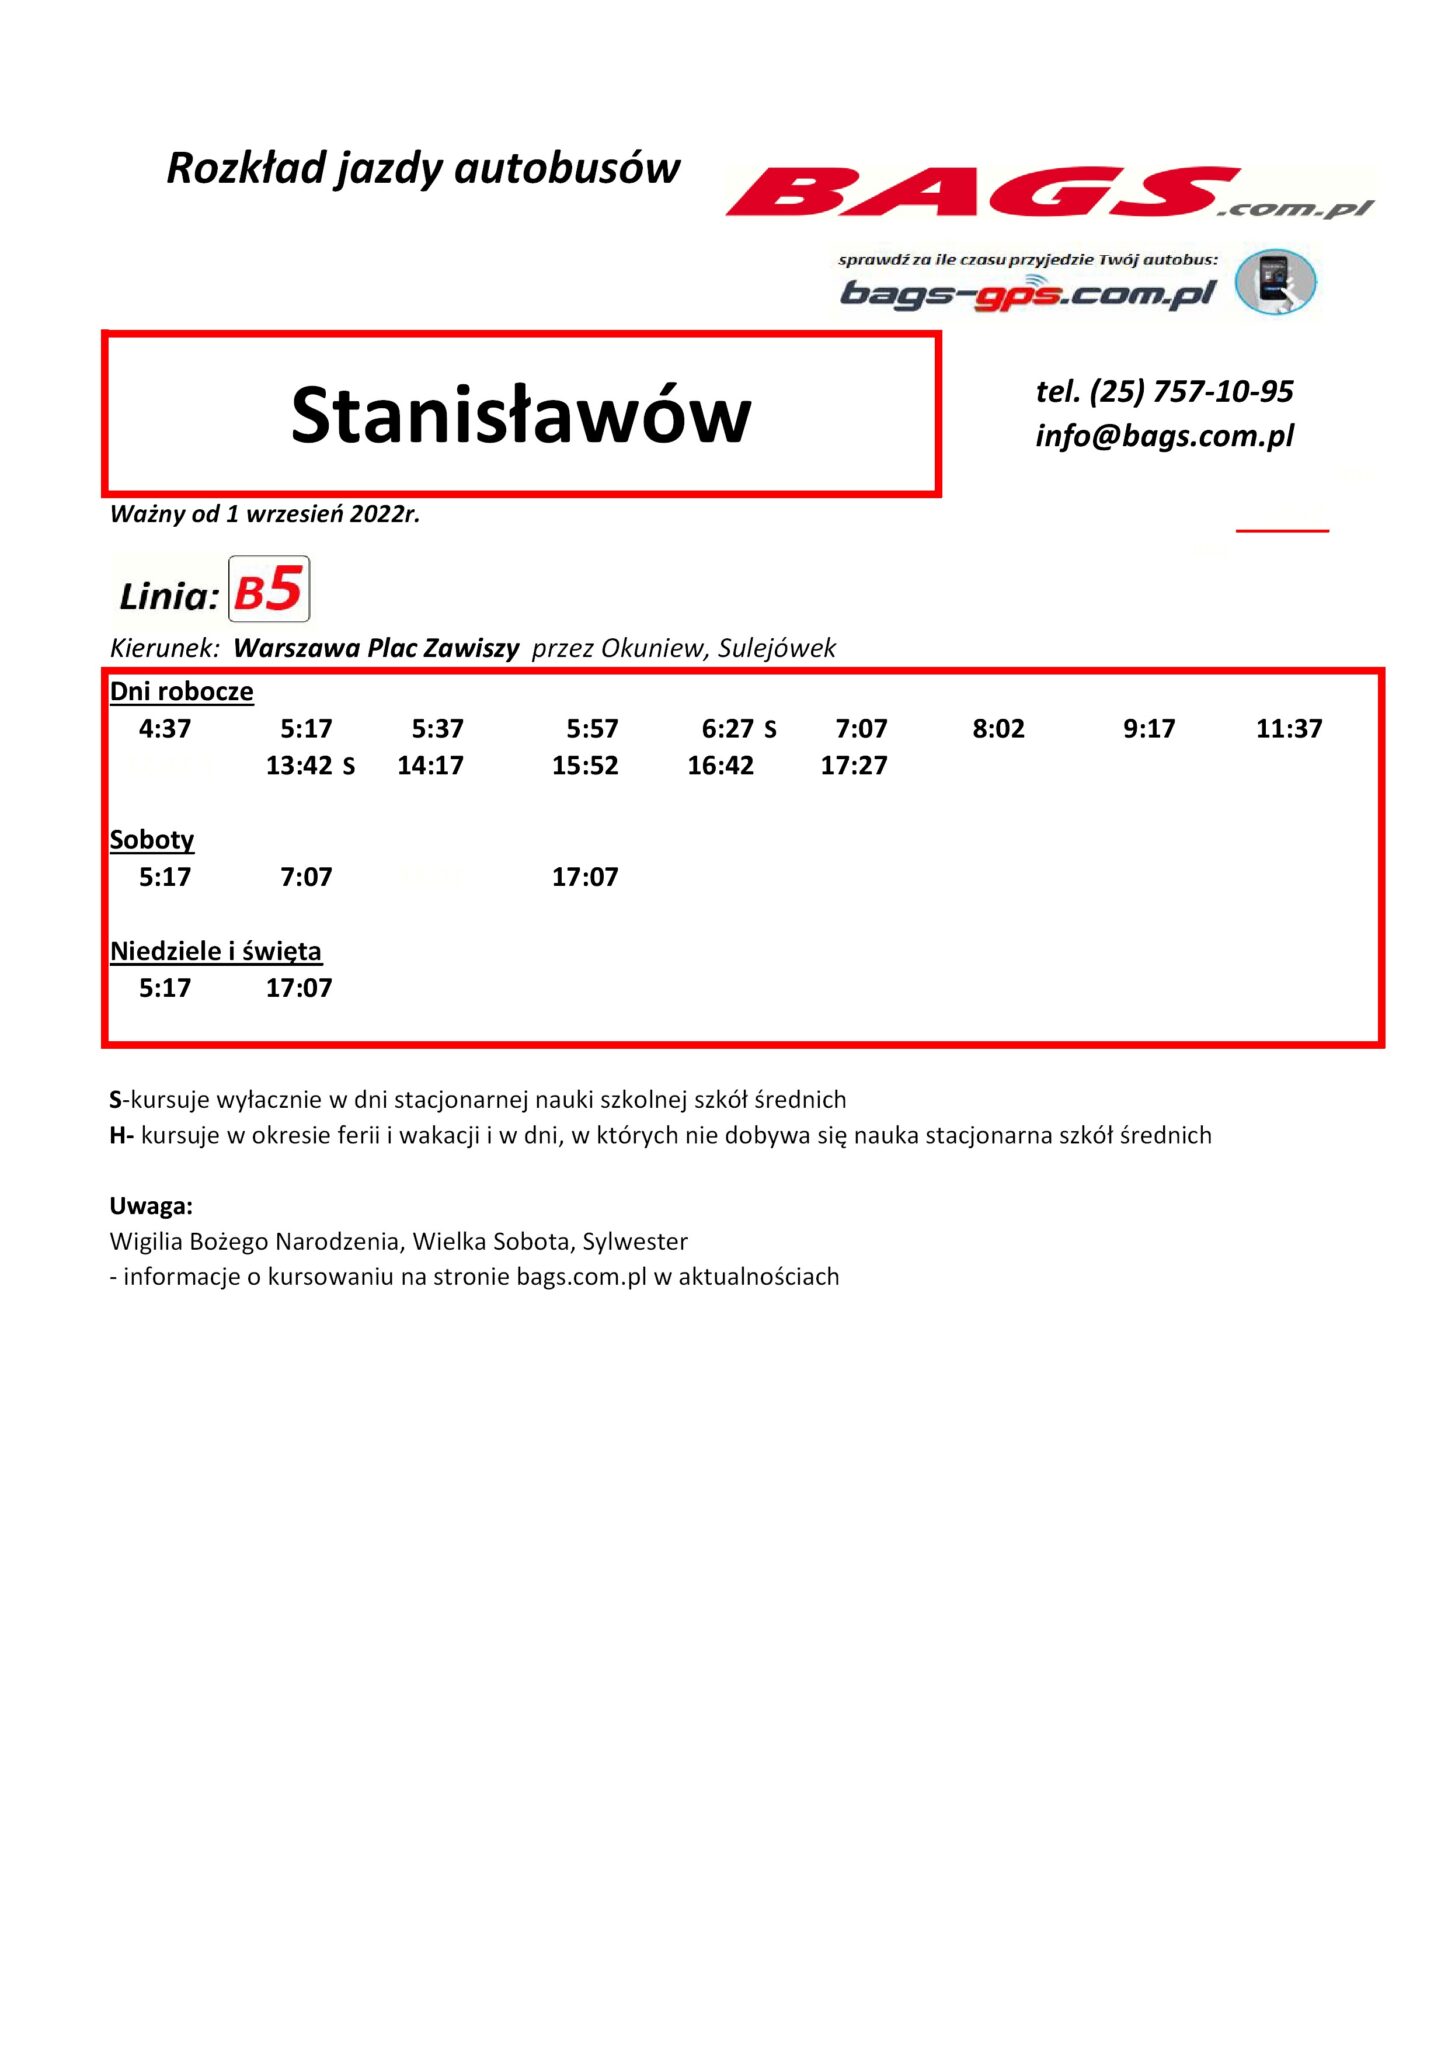 Stanislawow-1-1-1448x2048